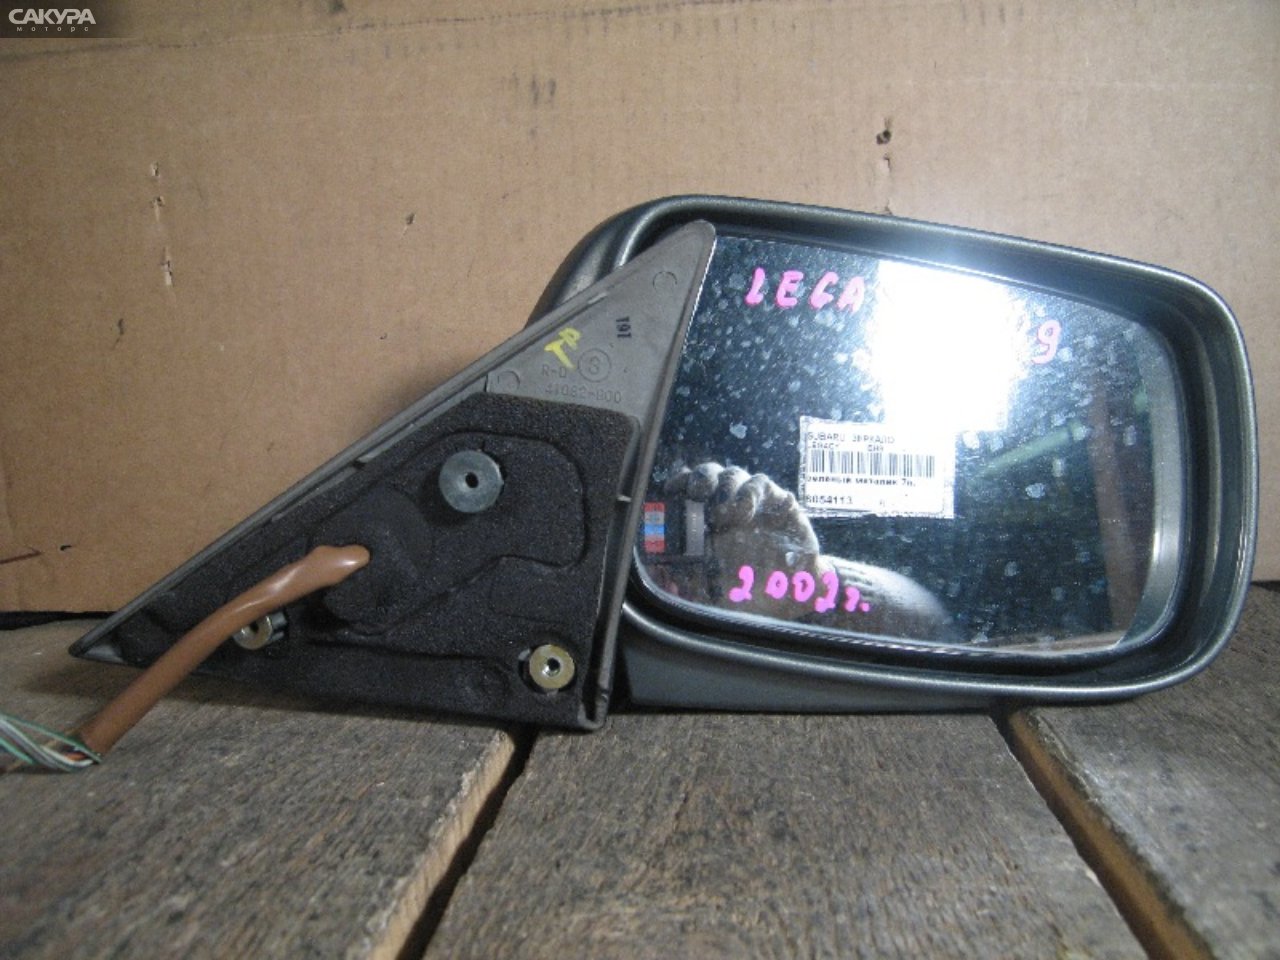 Зеркало боковое правое Subaru Legacy BH9: купить в Сакура Абакан.